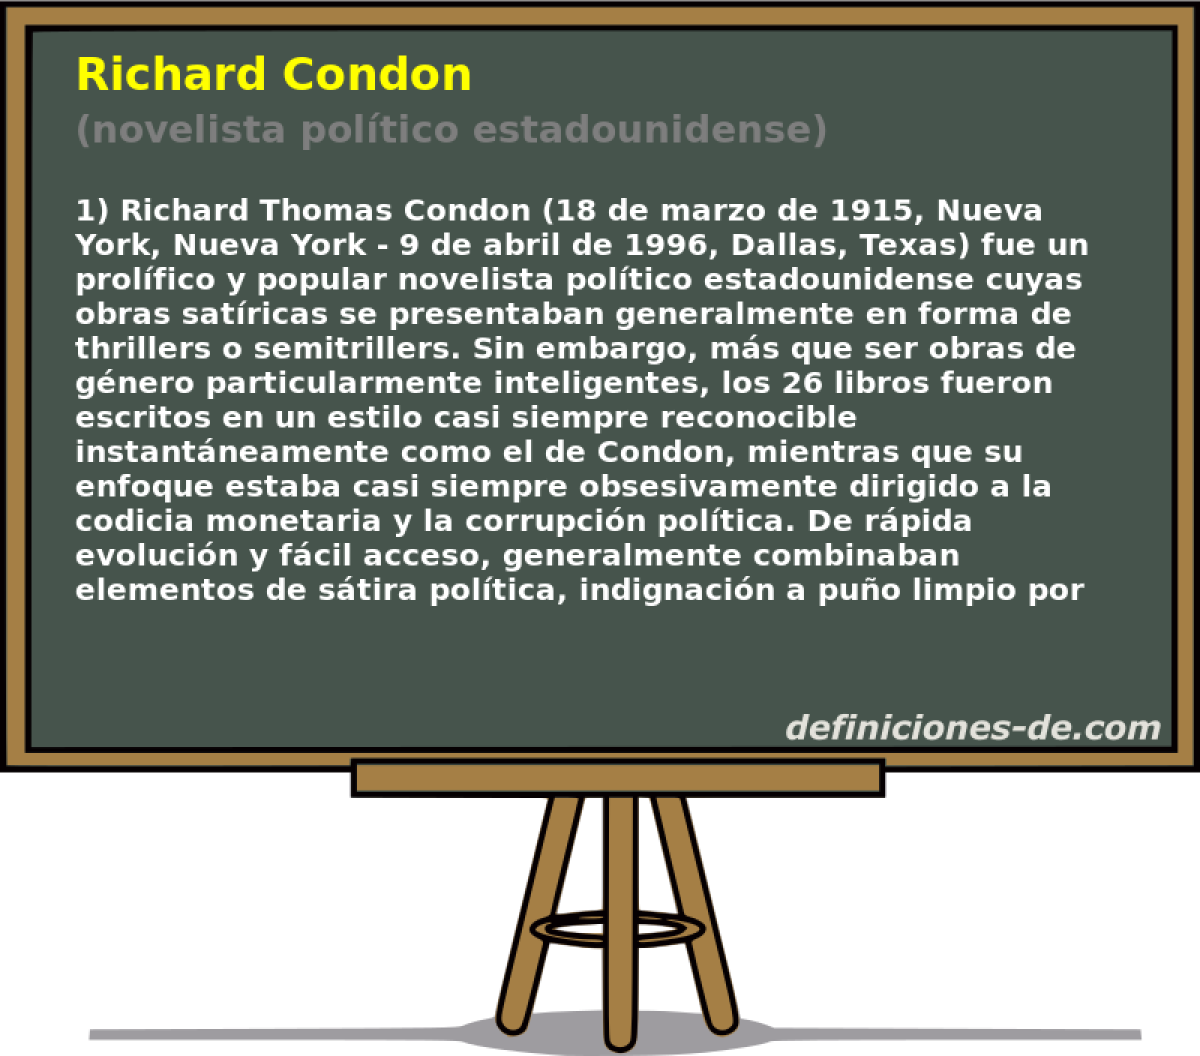 Richard Condon (novelista poltico estadounidense)